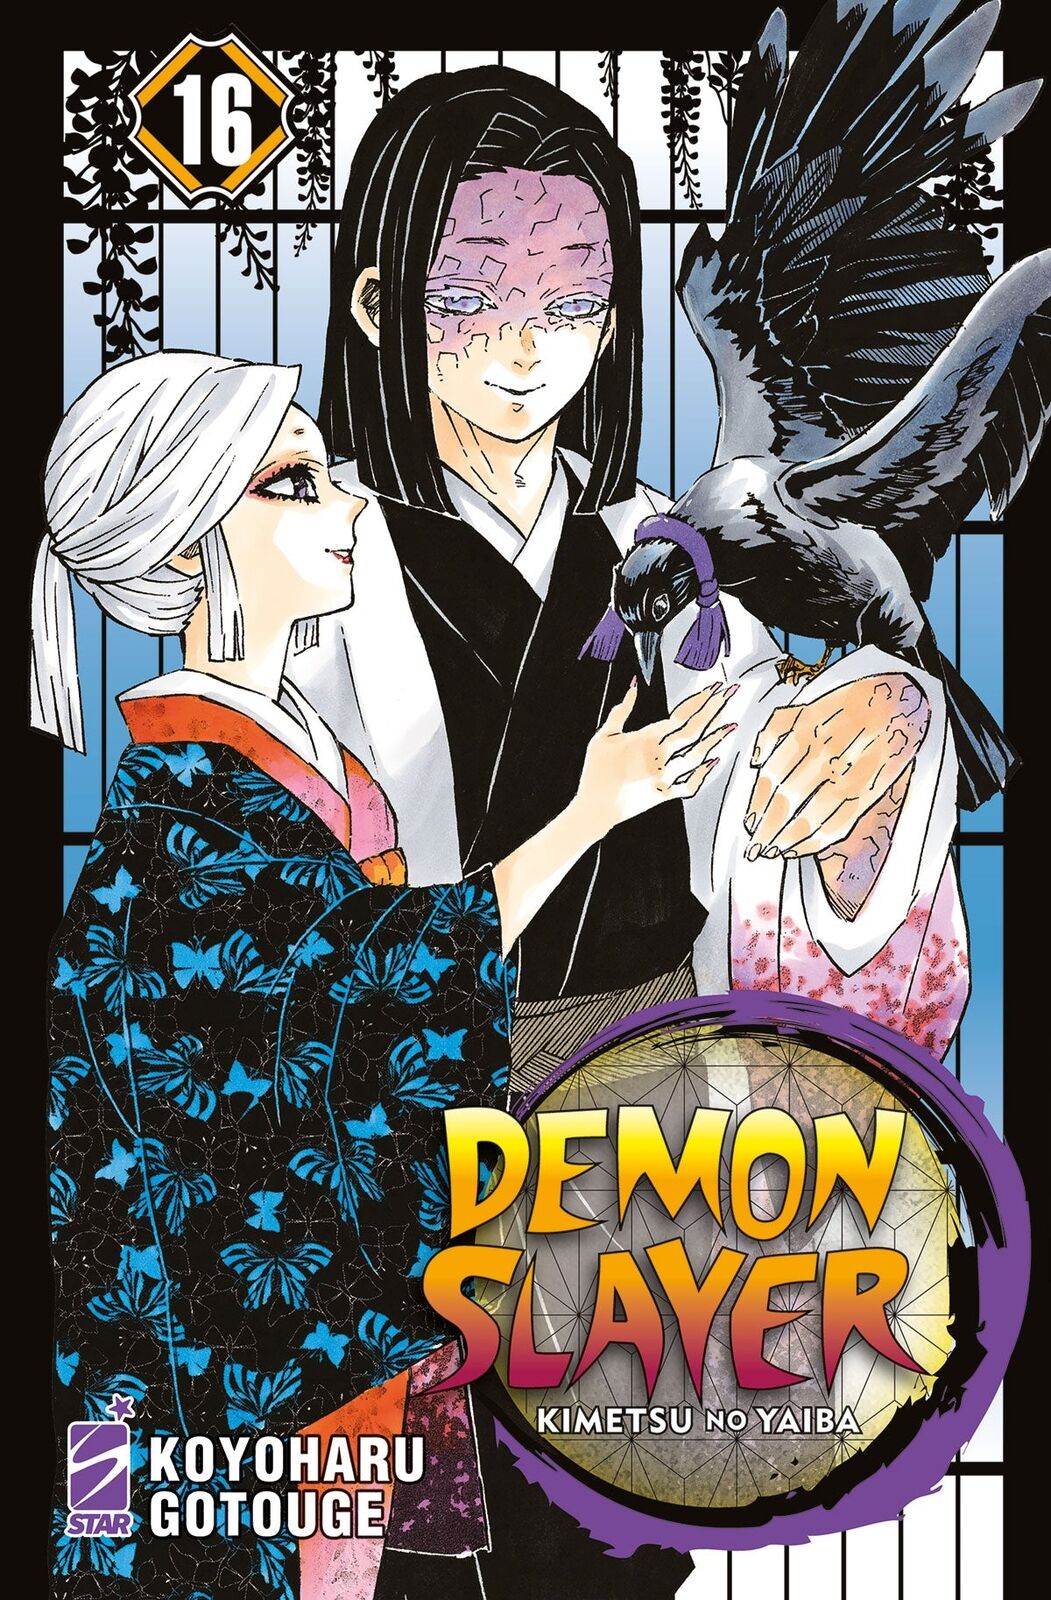 Demon Slayer Kimetsu no Yaiba 16 ITA nerd-pug